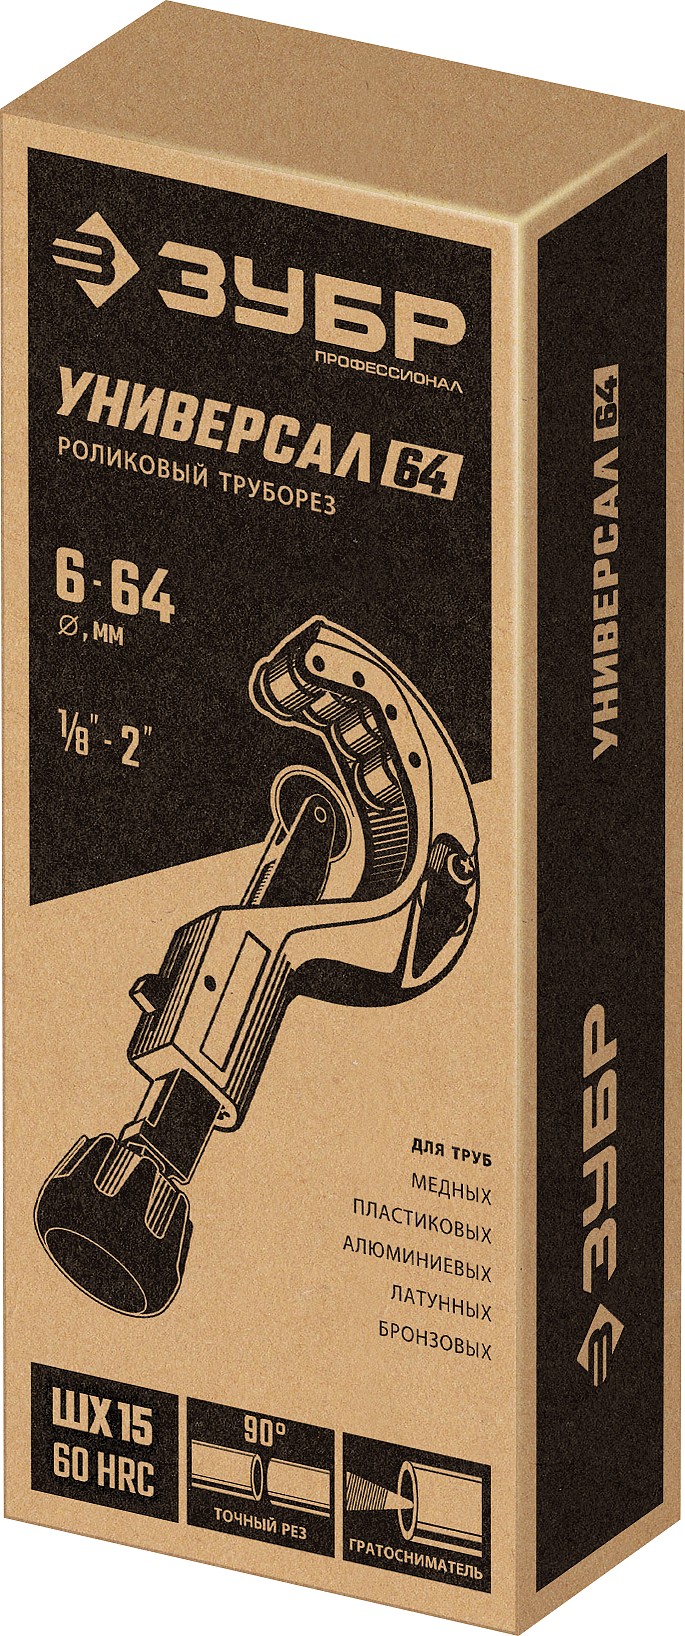 ЗУБР Универсал-64, 6 - 64 мм, труборез для меди и алюминия, Профессионал (23864)